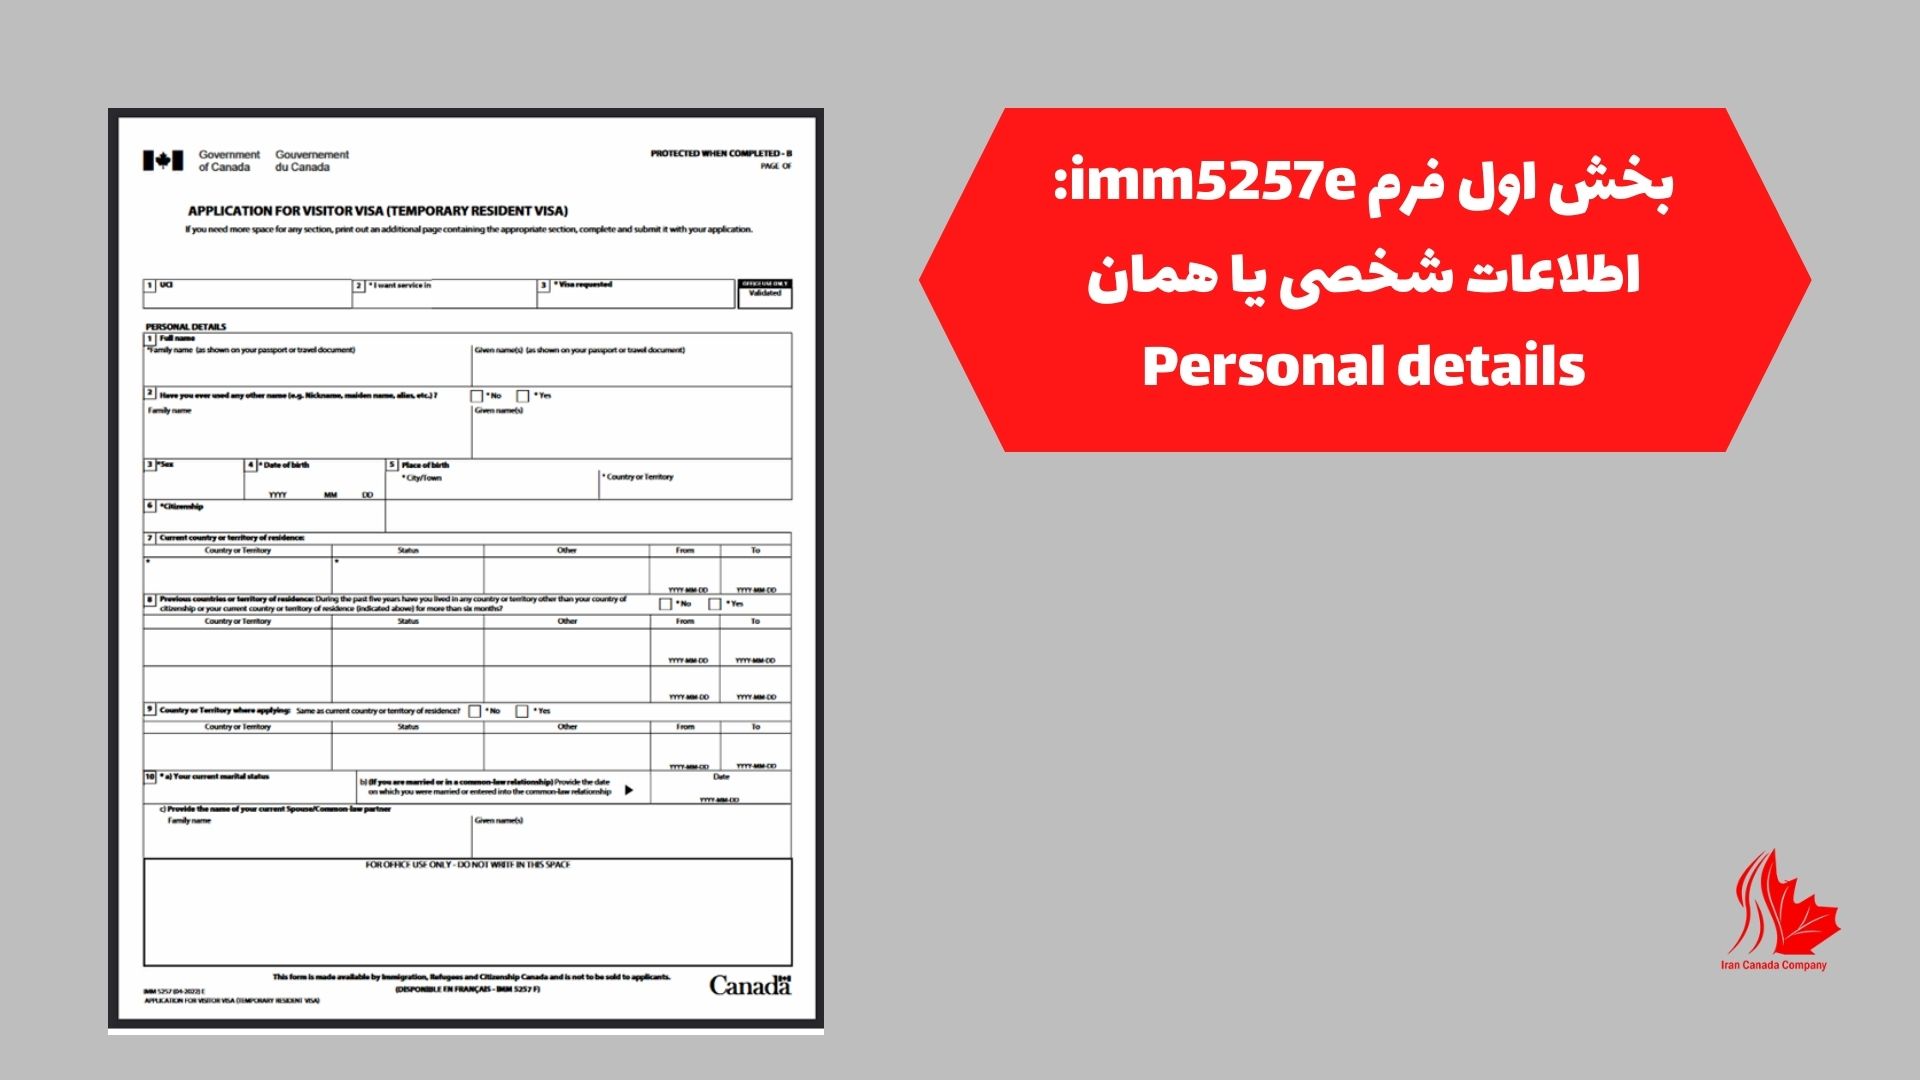 بخش اول فرم imm5257e: اطلاعات شخصی یا همان Personal details